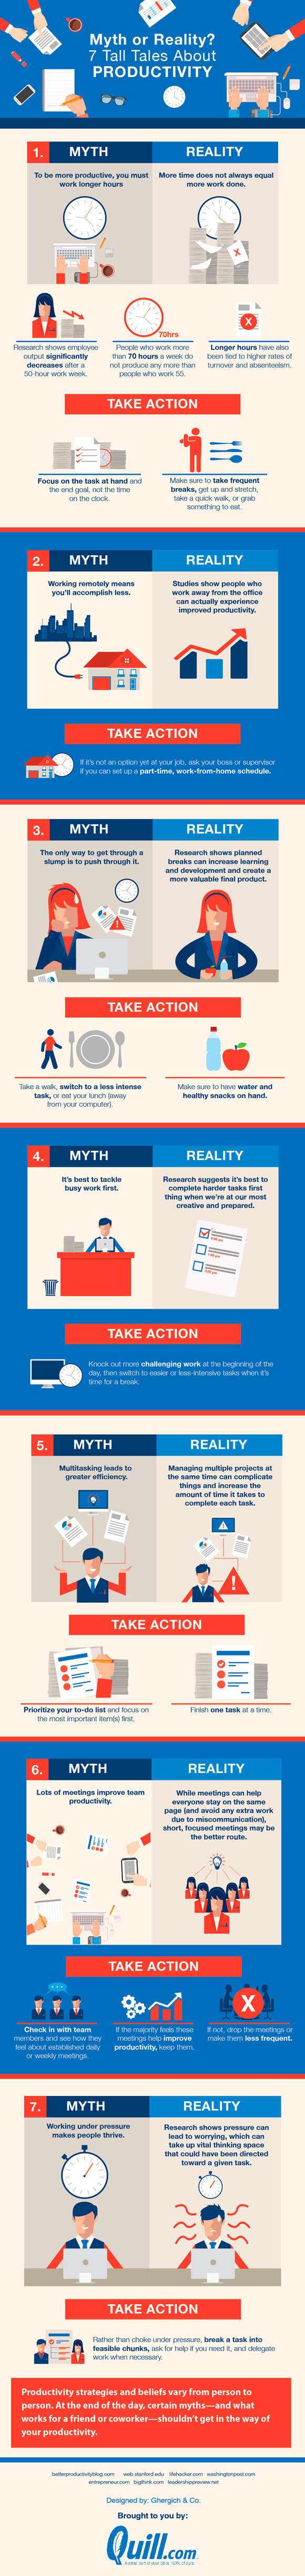 ds-productivity-myths